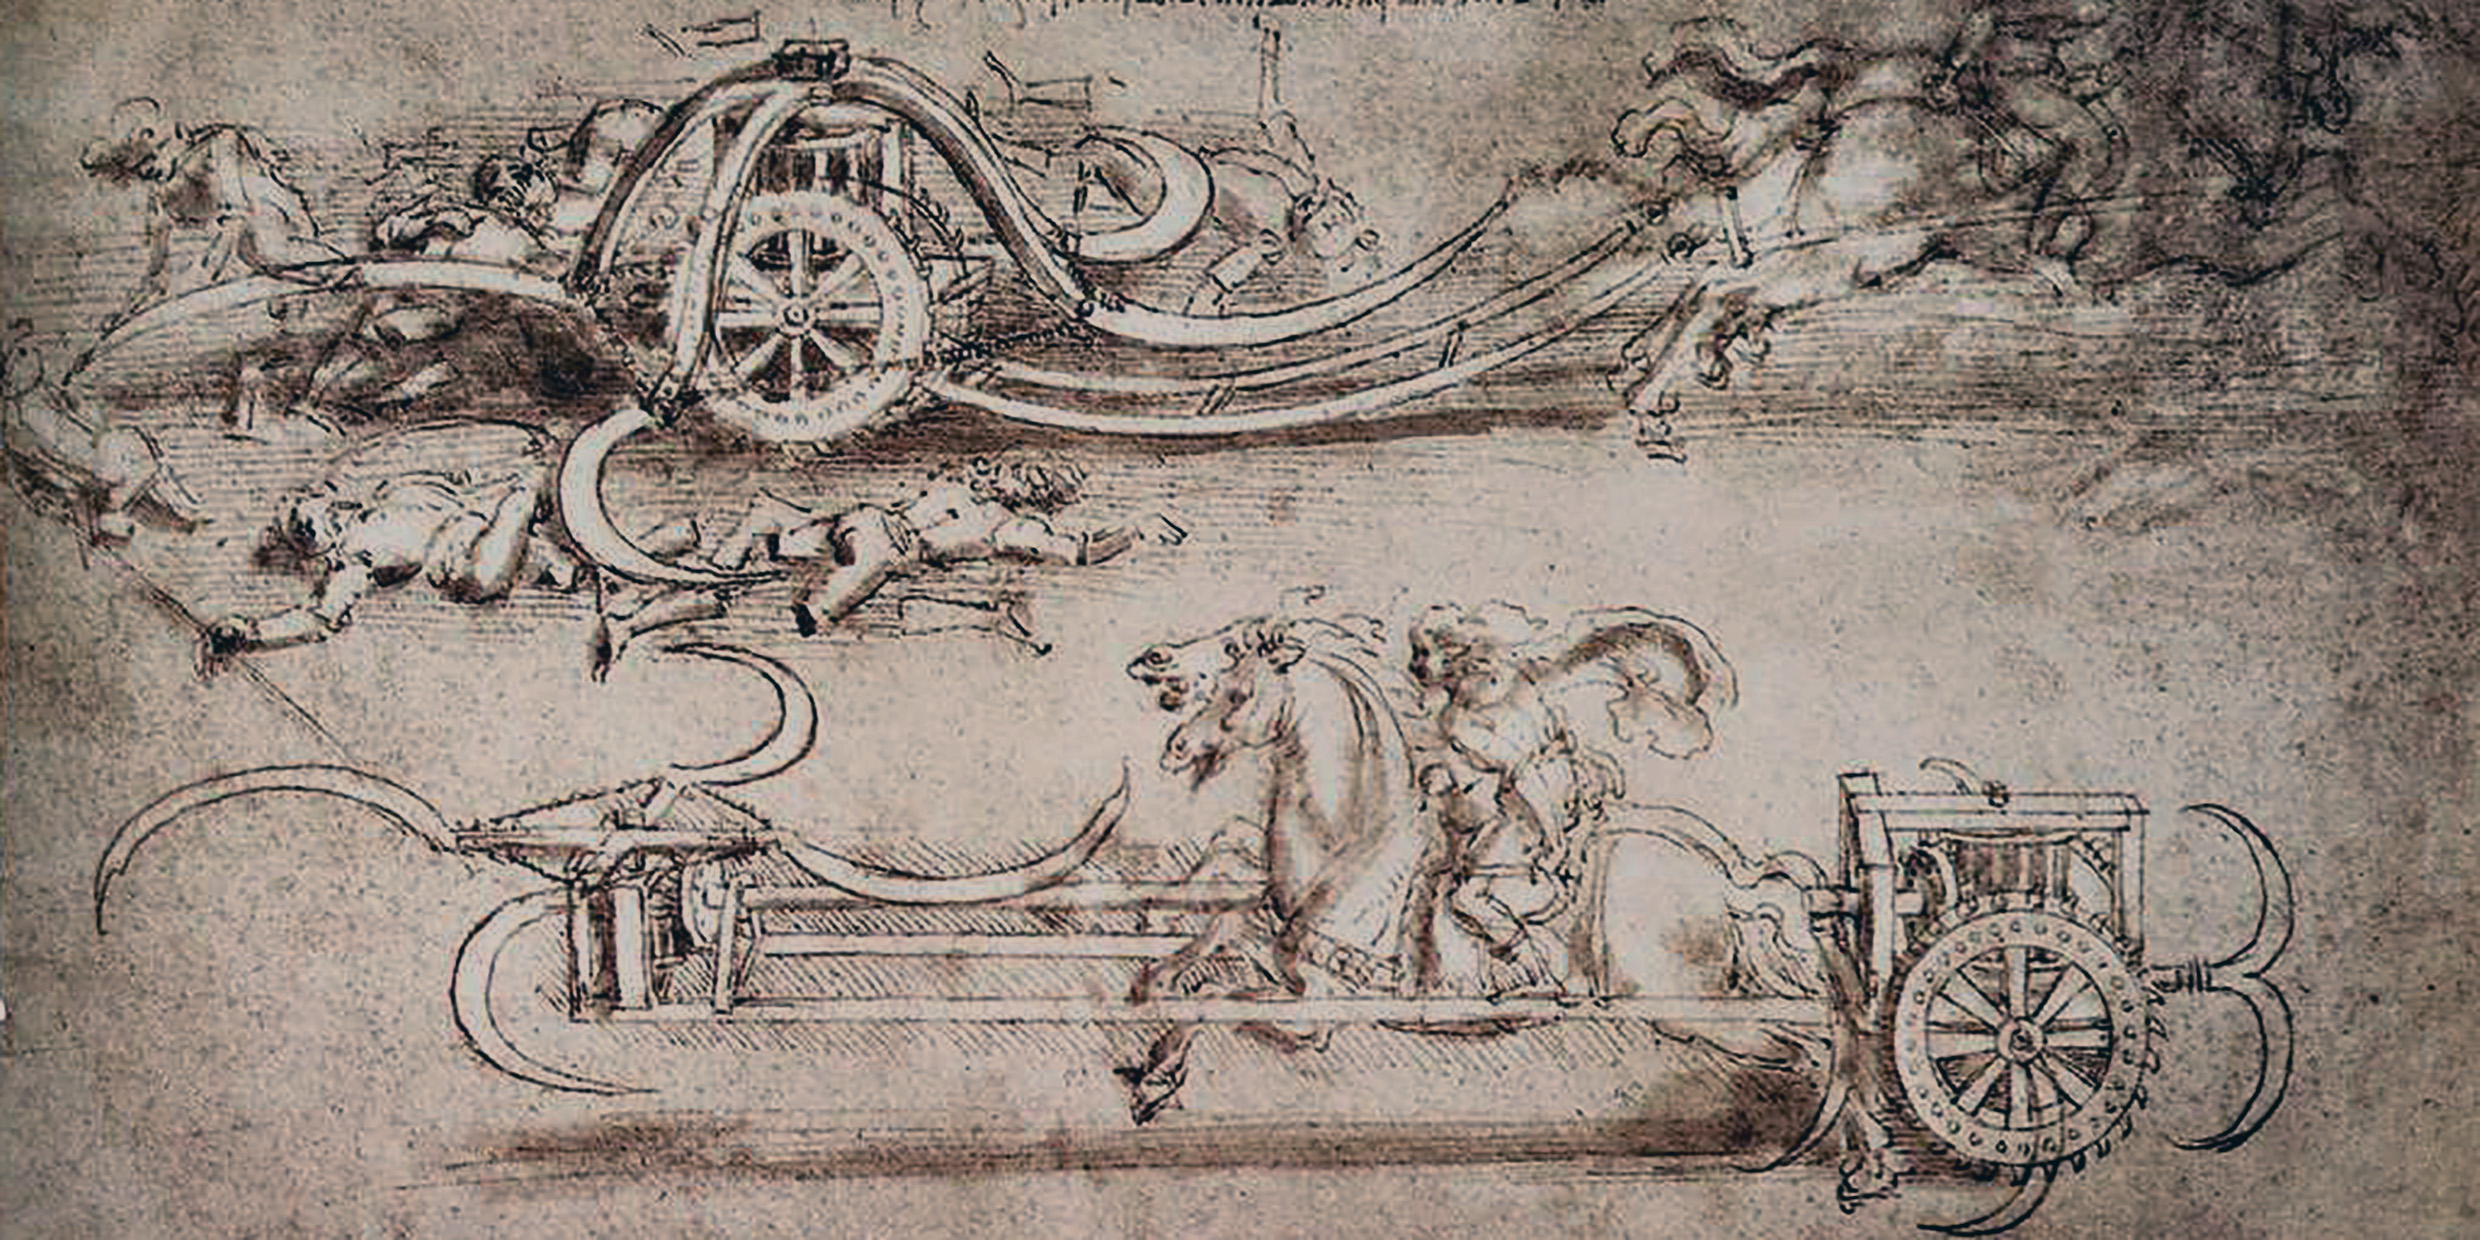 Image of Da Vinci's scythed chariot